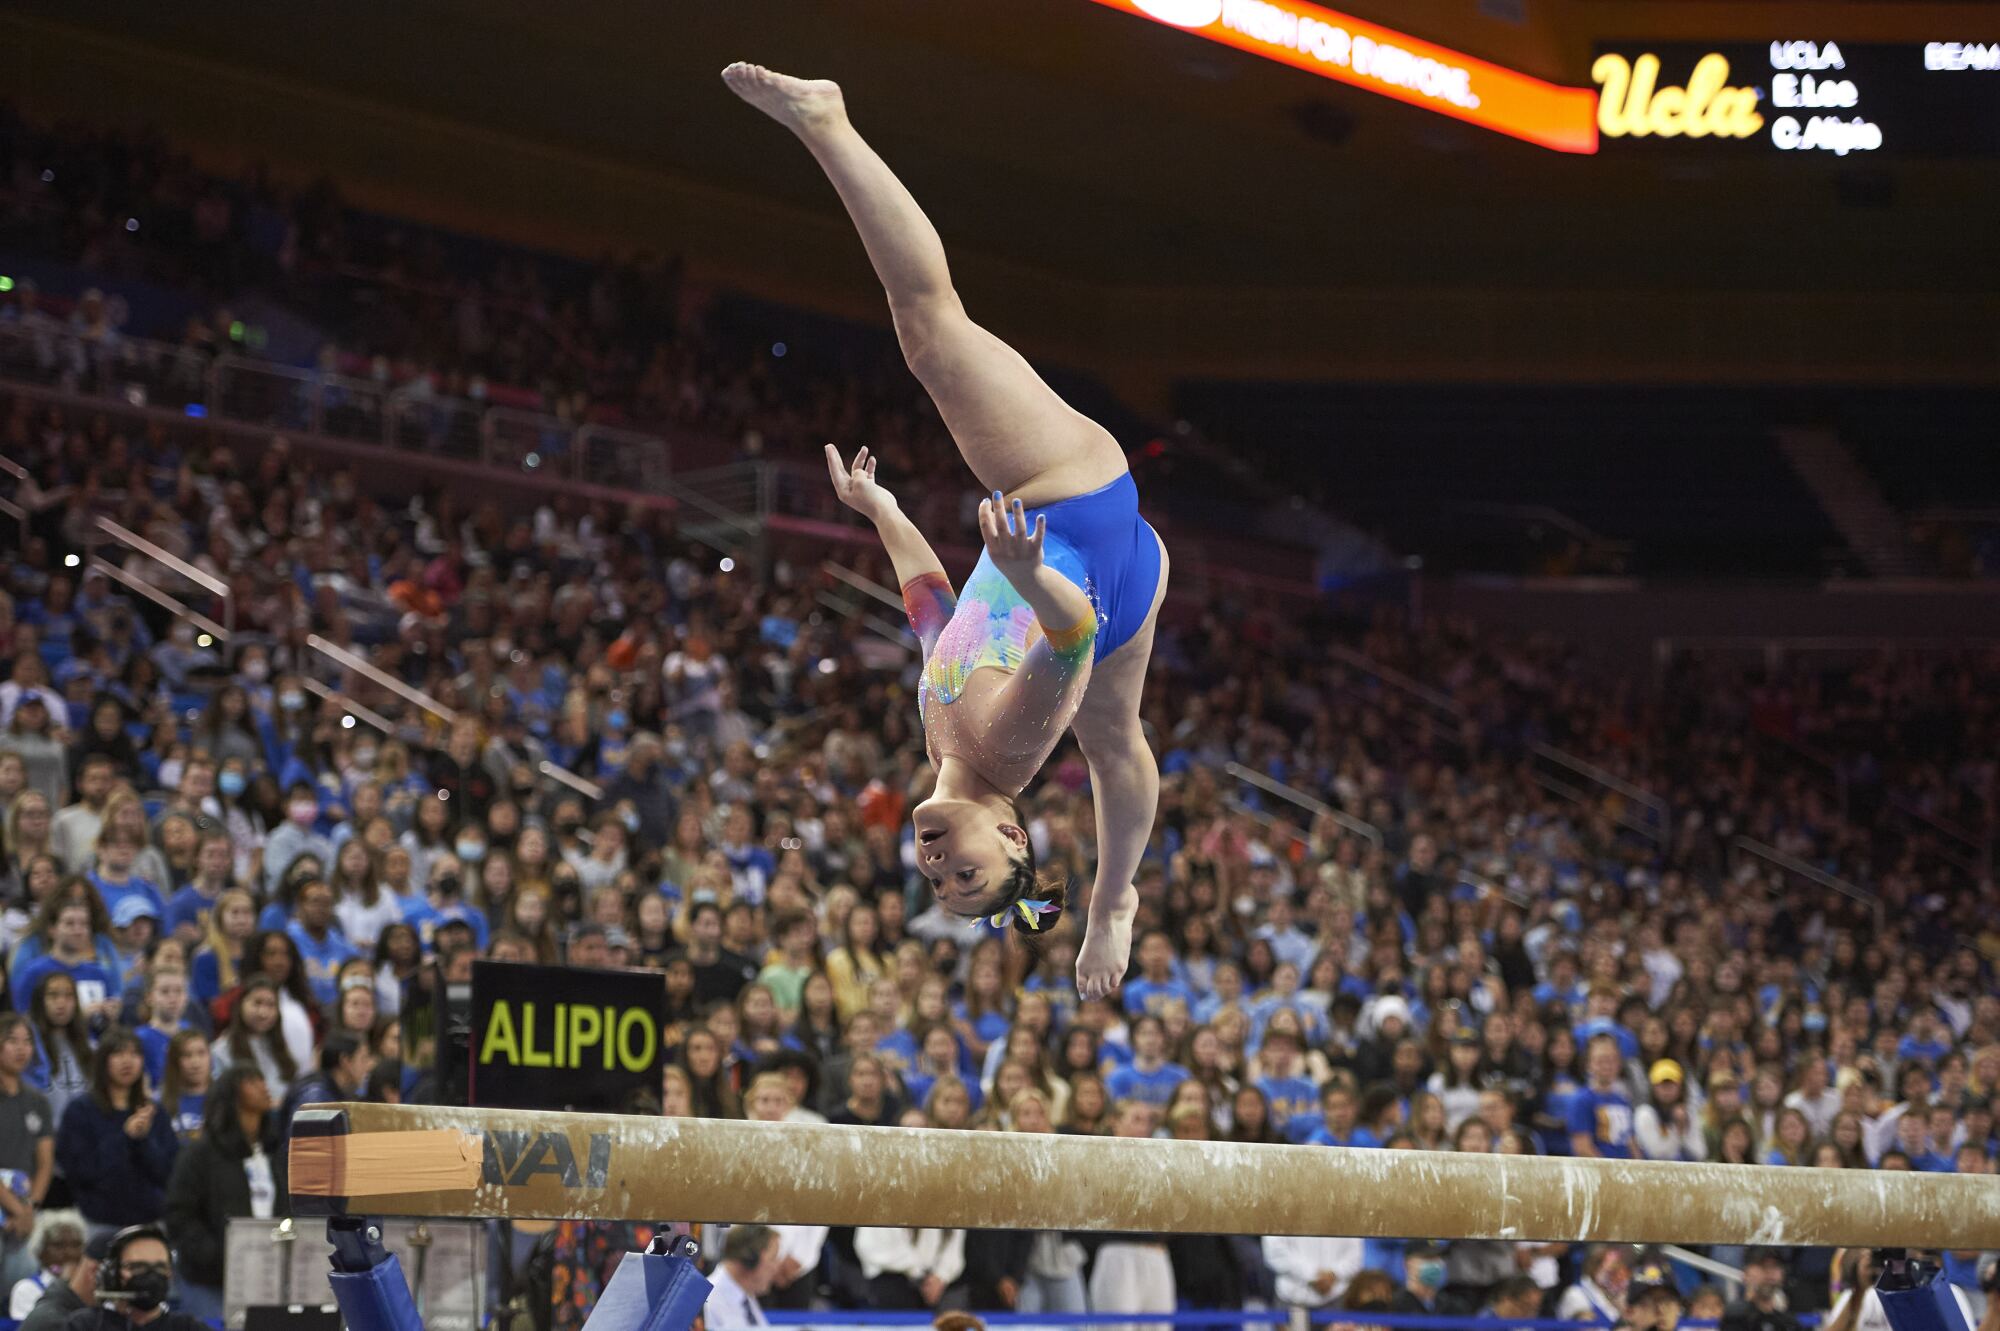 La gymnaste de l'UCLA Ciena Alipio participe à la poutre lors d'une rencontre contre l'État de l'Oregon